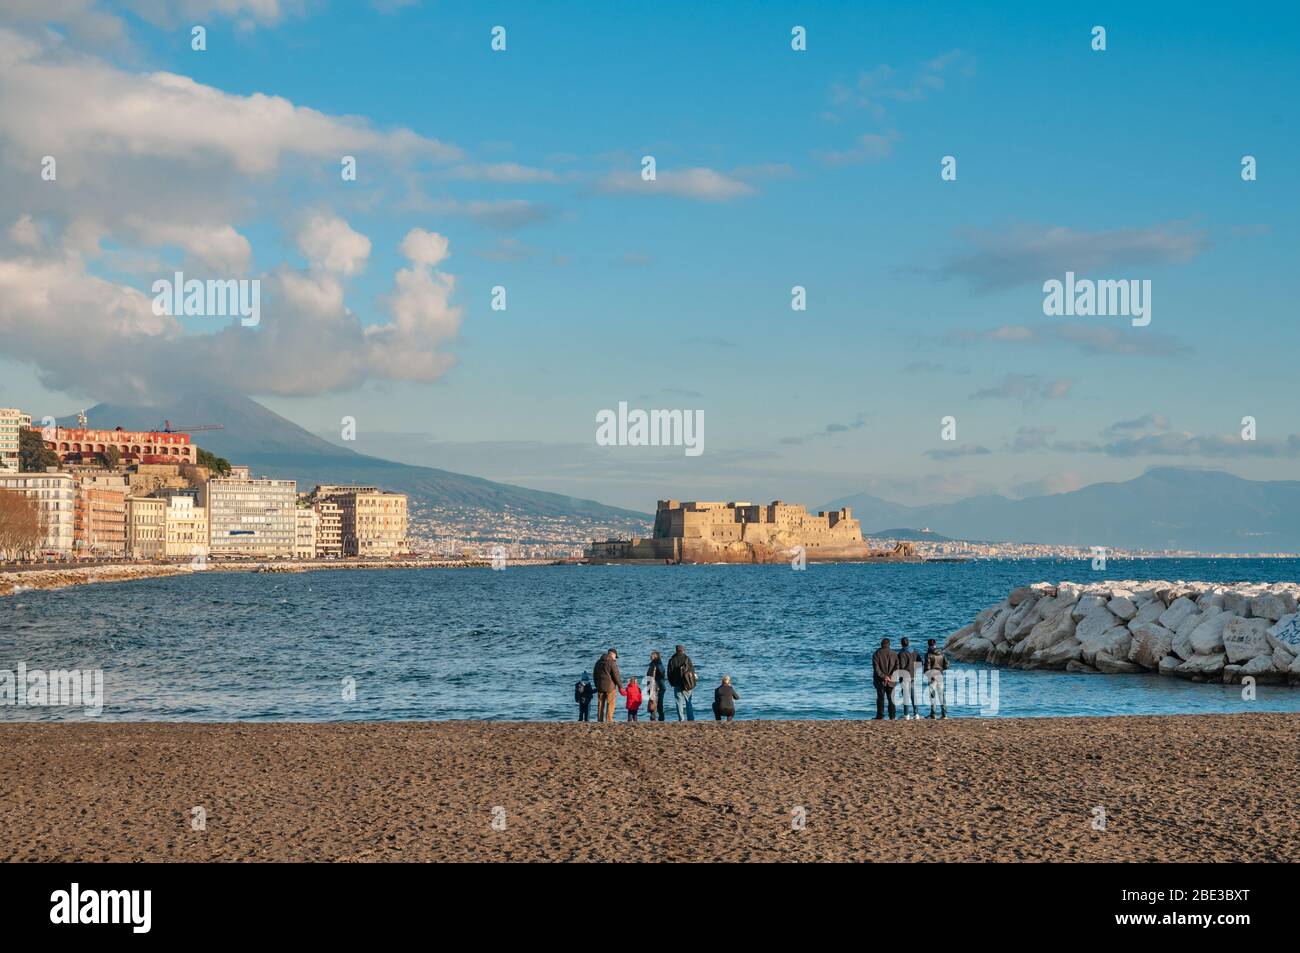 Eine Gruppe von Menschen bewundern die Küste von Neapel von einem Stadtstrand aus gesehen. Stockfoto